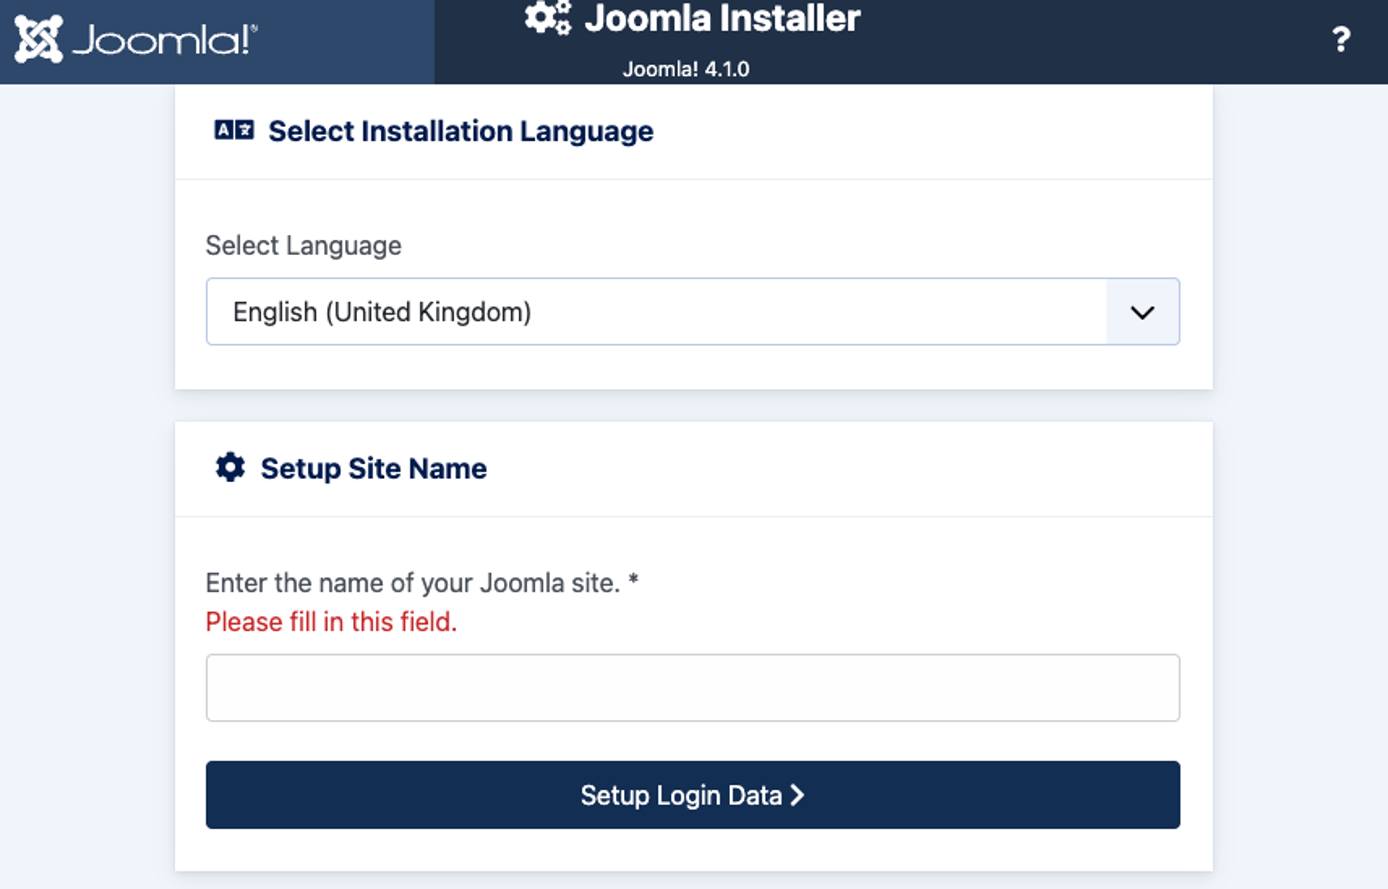 Screenshot of the Joomla Installer prompt